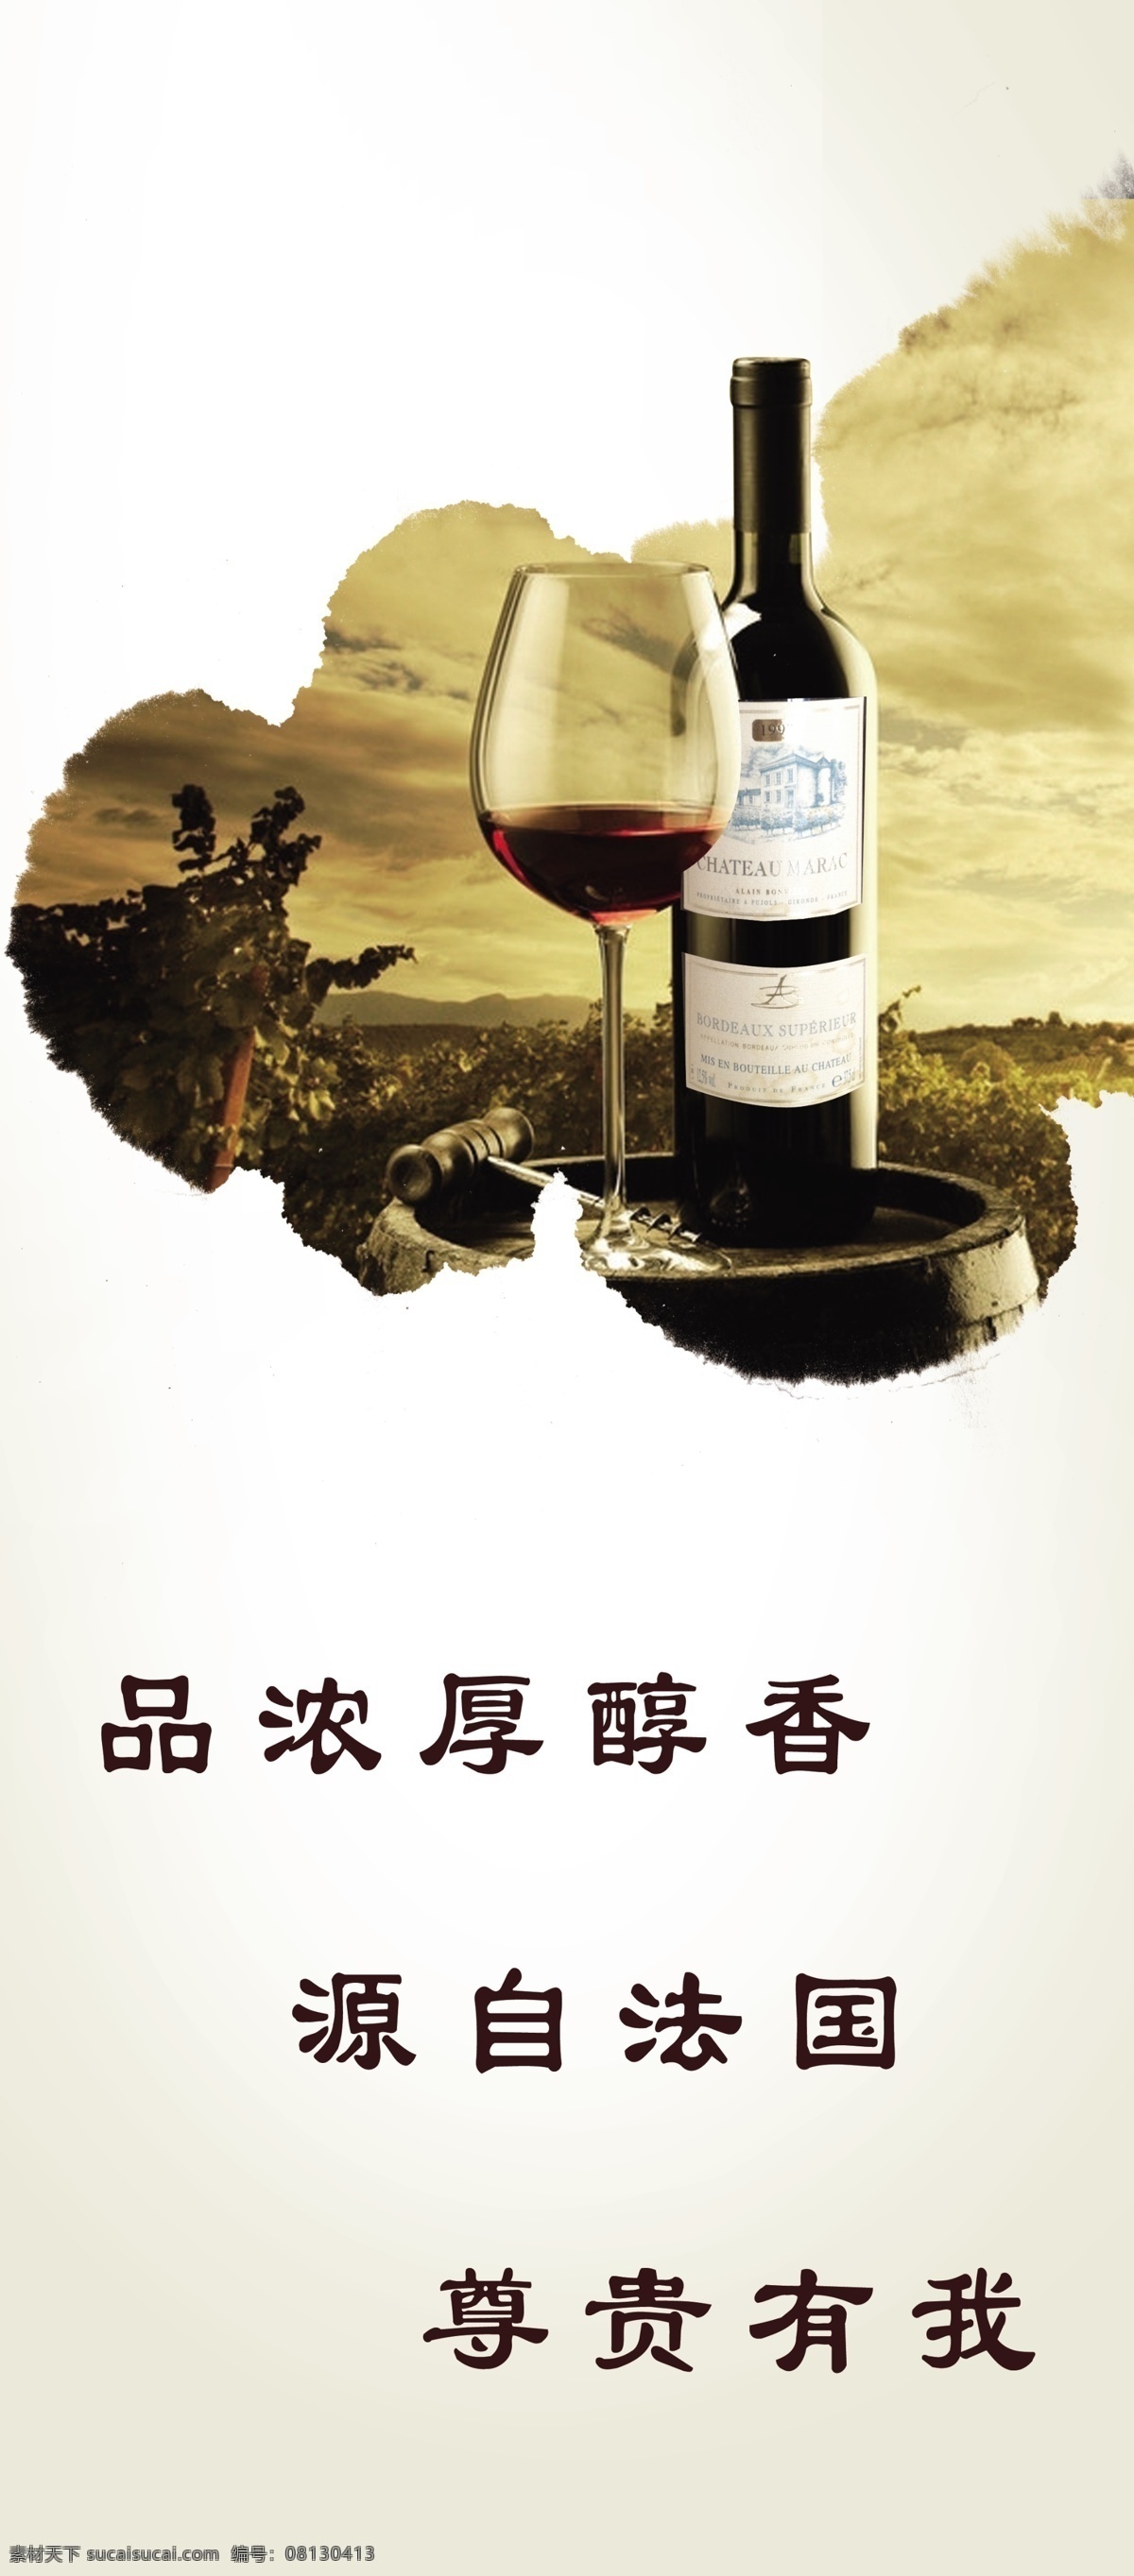 红酒广告 法国红酒 展架 易拉宝 挂历 广告宣传 画册设计